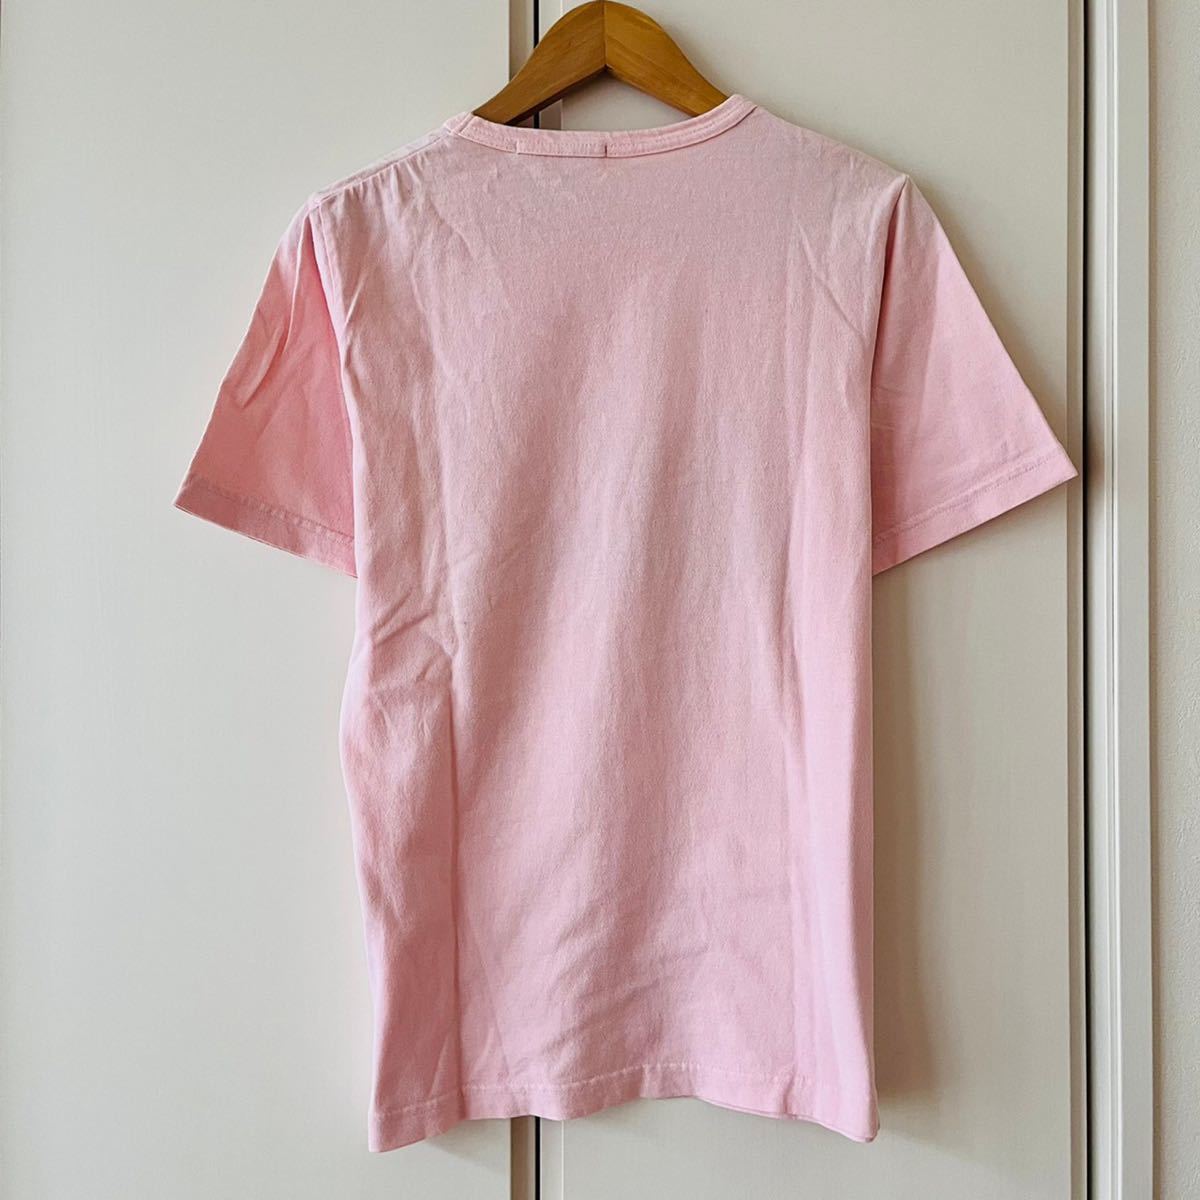 F5750cb FRAPBOIS  створка  ... стул 　 футболка с коротким руковом 　1(S〜M...)  розовый 　 женский 　 принт  футболка   птица 　 простой 　 повседневный 　 корея  пр-во  